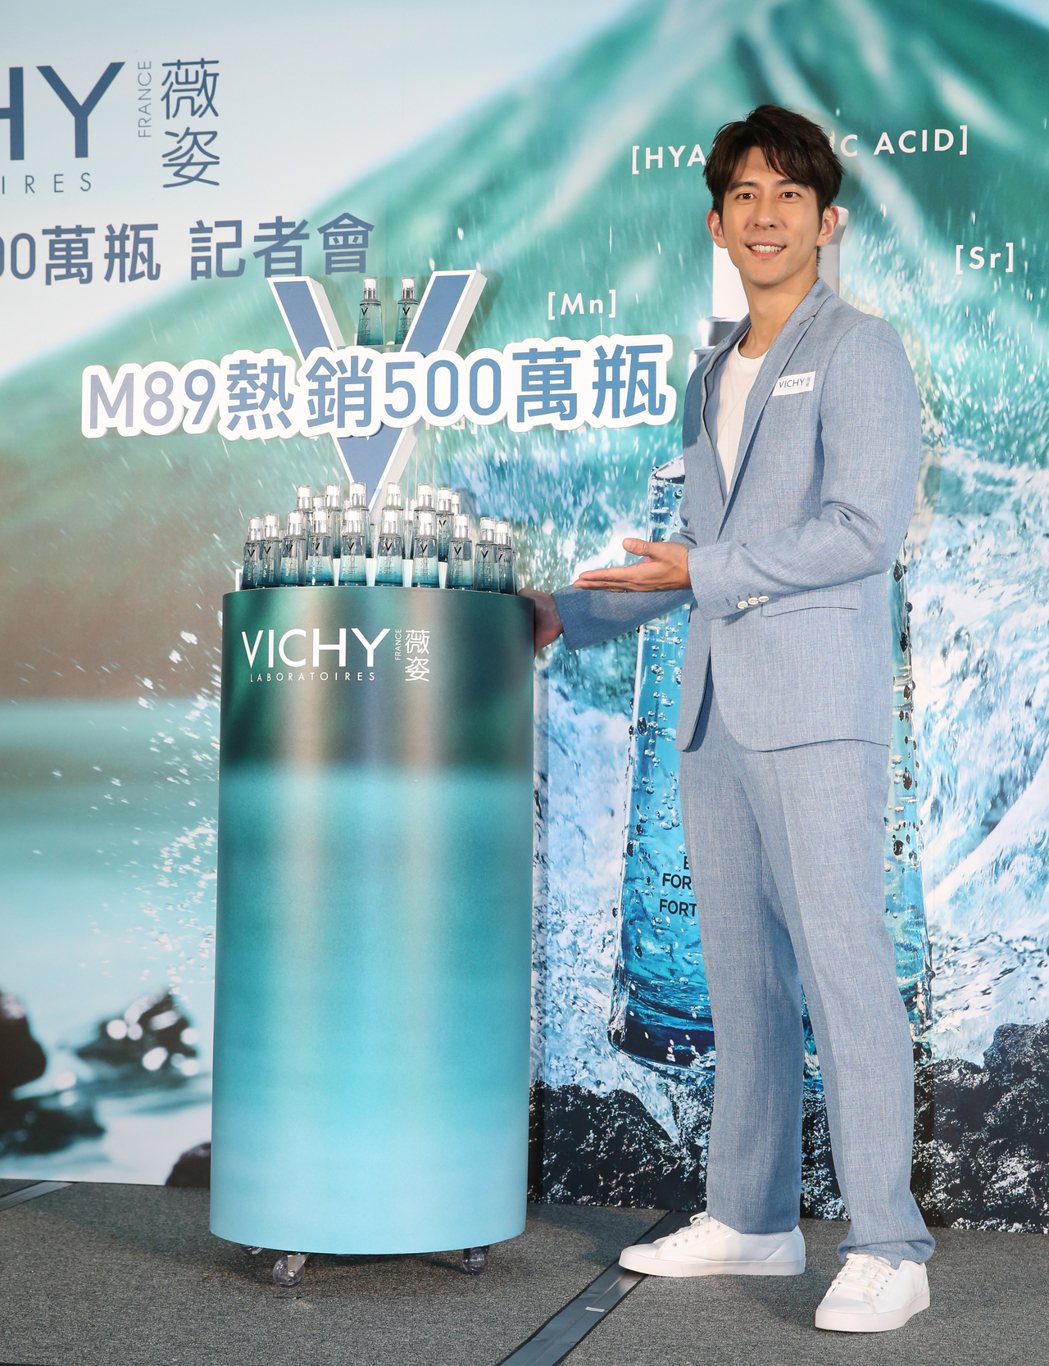 修杰楷出席薇姿M89全球熱銷500萬瓶記者會，擔任品牌大使。記者葉信菉／攝影